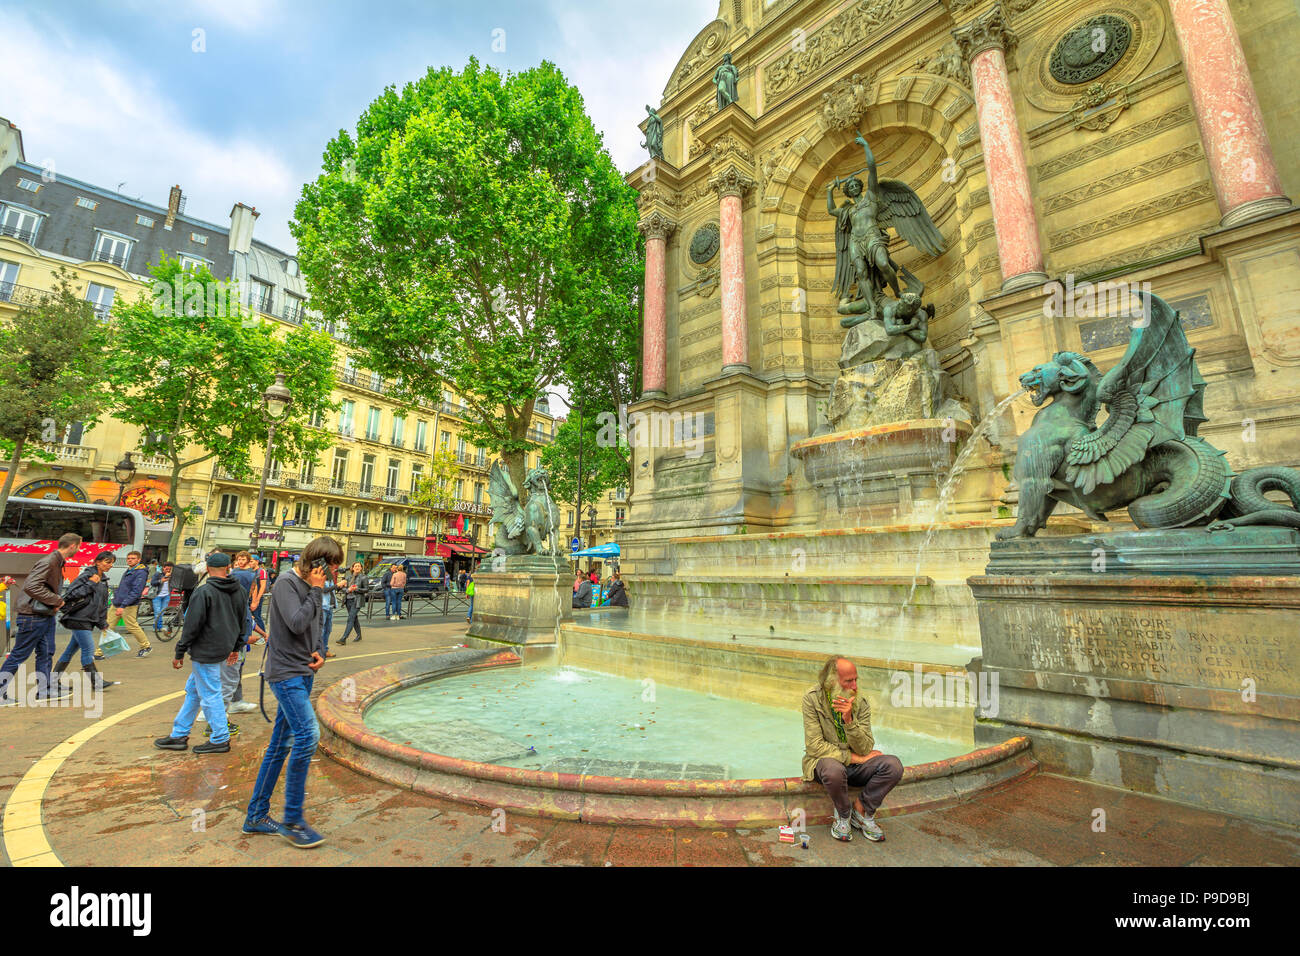 Paris, Frankreich, 1. Juli 2017: Clochard und Touristen in Place Saint-Michel und monumentale Fontaine Saint-Michel mit zwei wasserspeienden Drachen. Historischen städtischen Wahrzeichen in Paris. Stockfoto